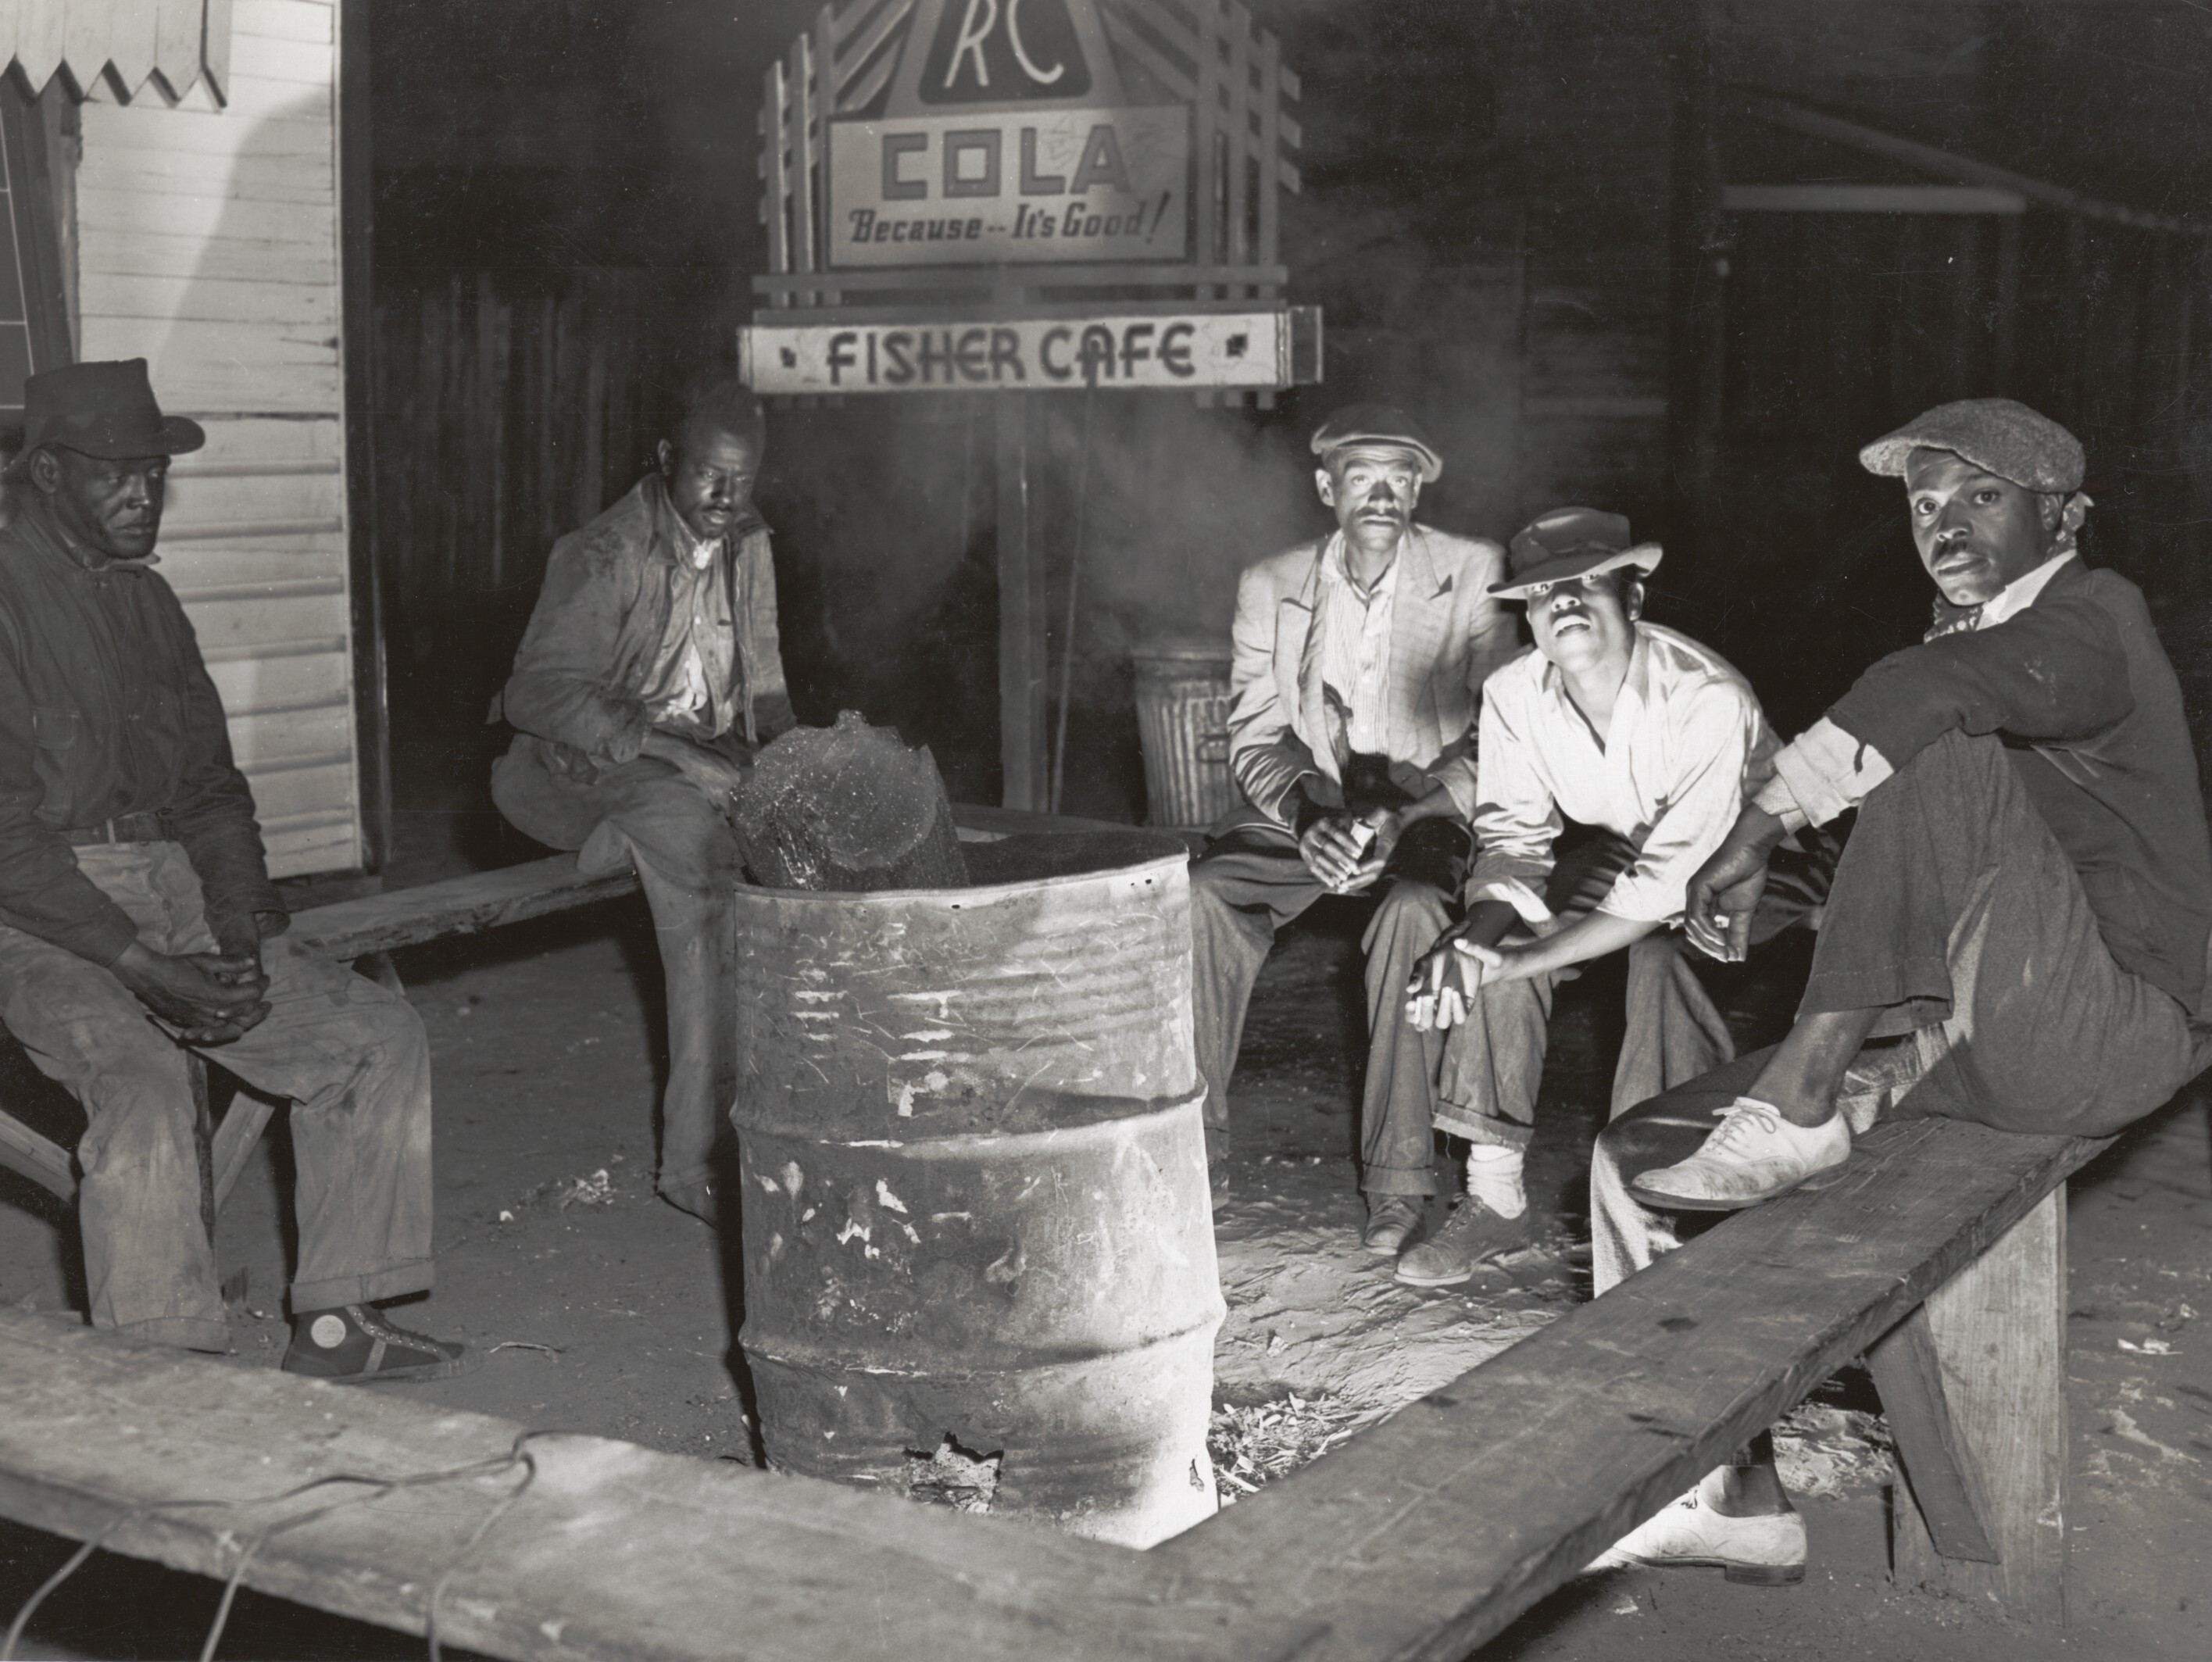 Рабочие у костра субботним вечером в негритянском квартале. Бель-Глэйд, Флорида, 1941. Фотограф Мэрион Пост Уолкотт